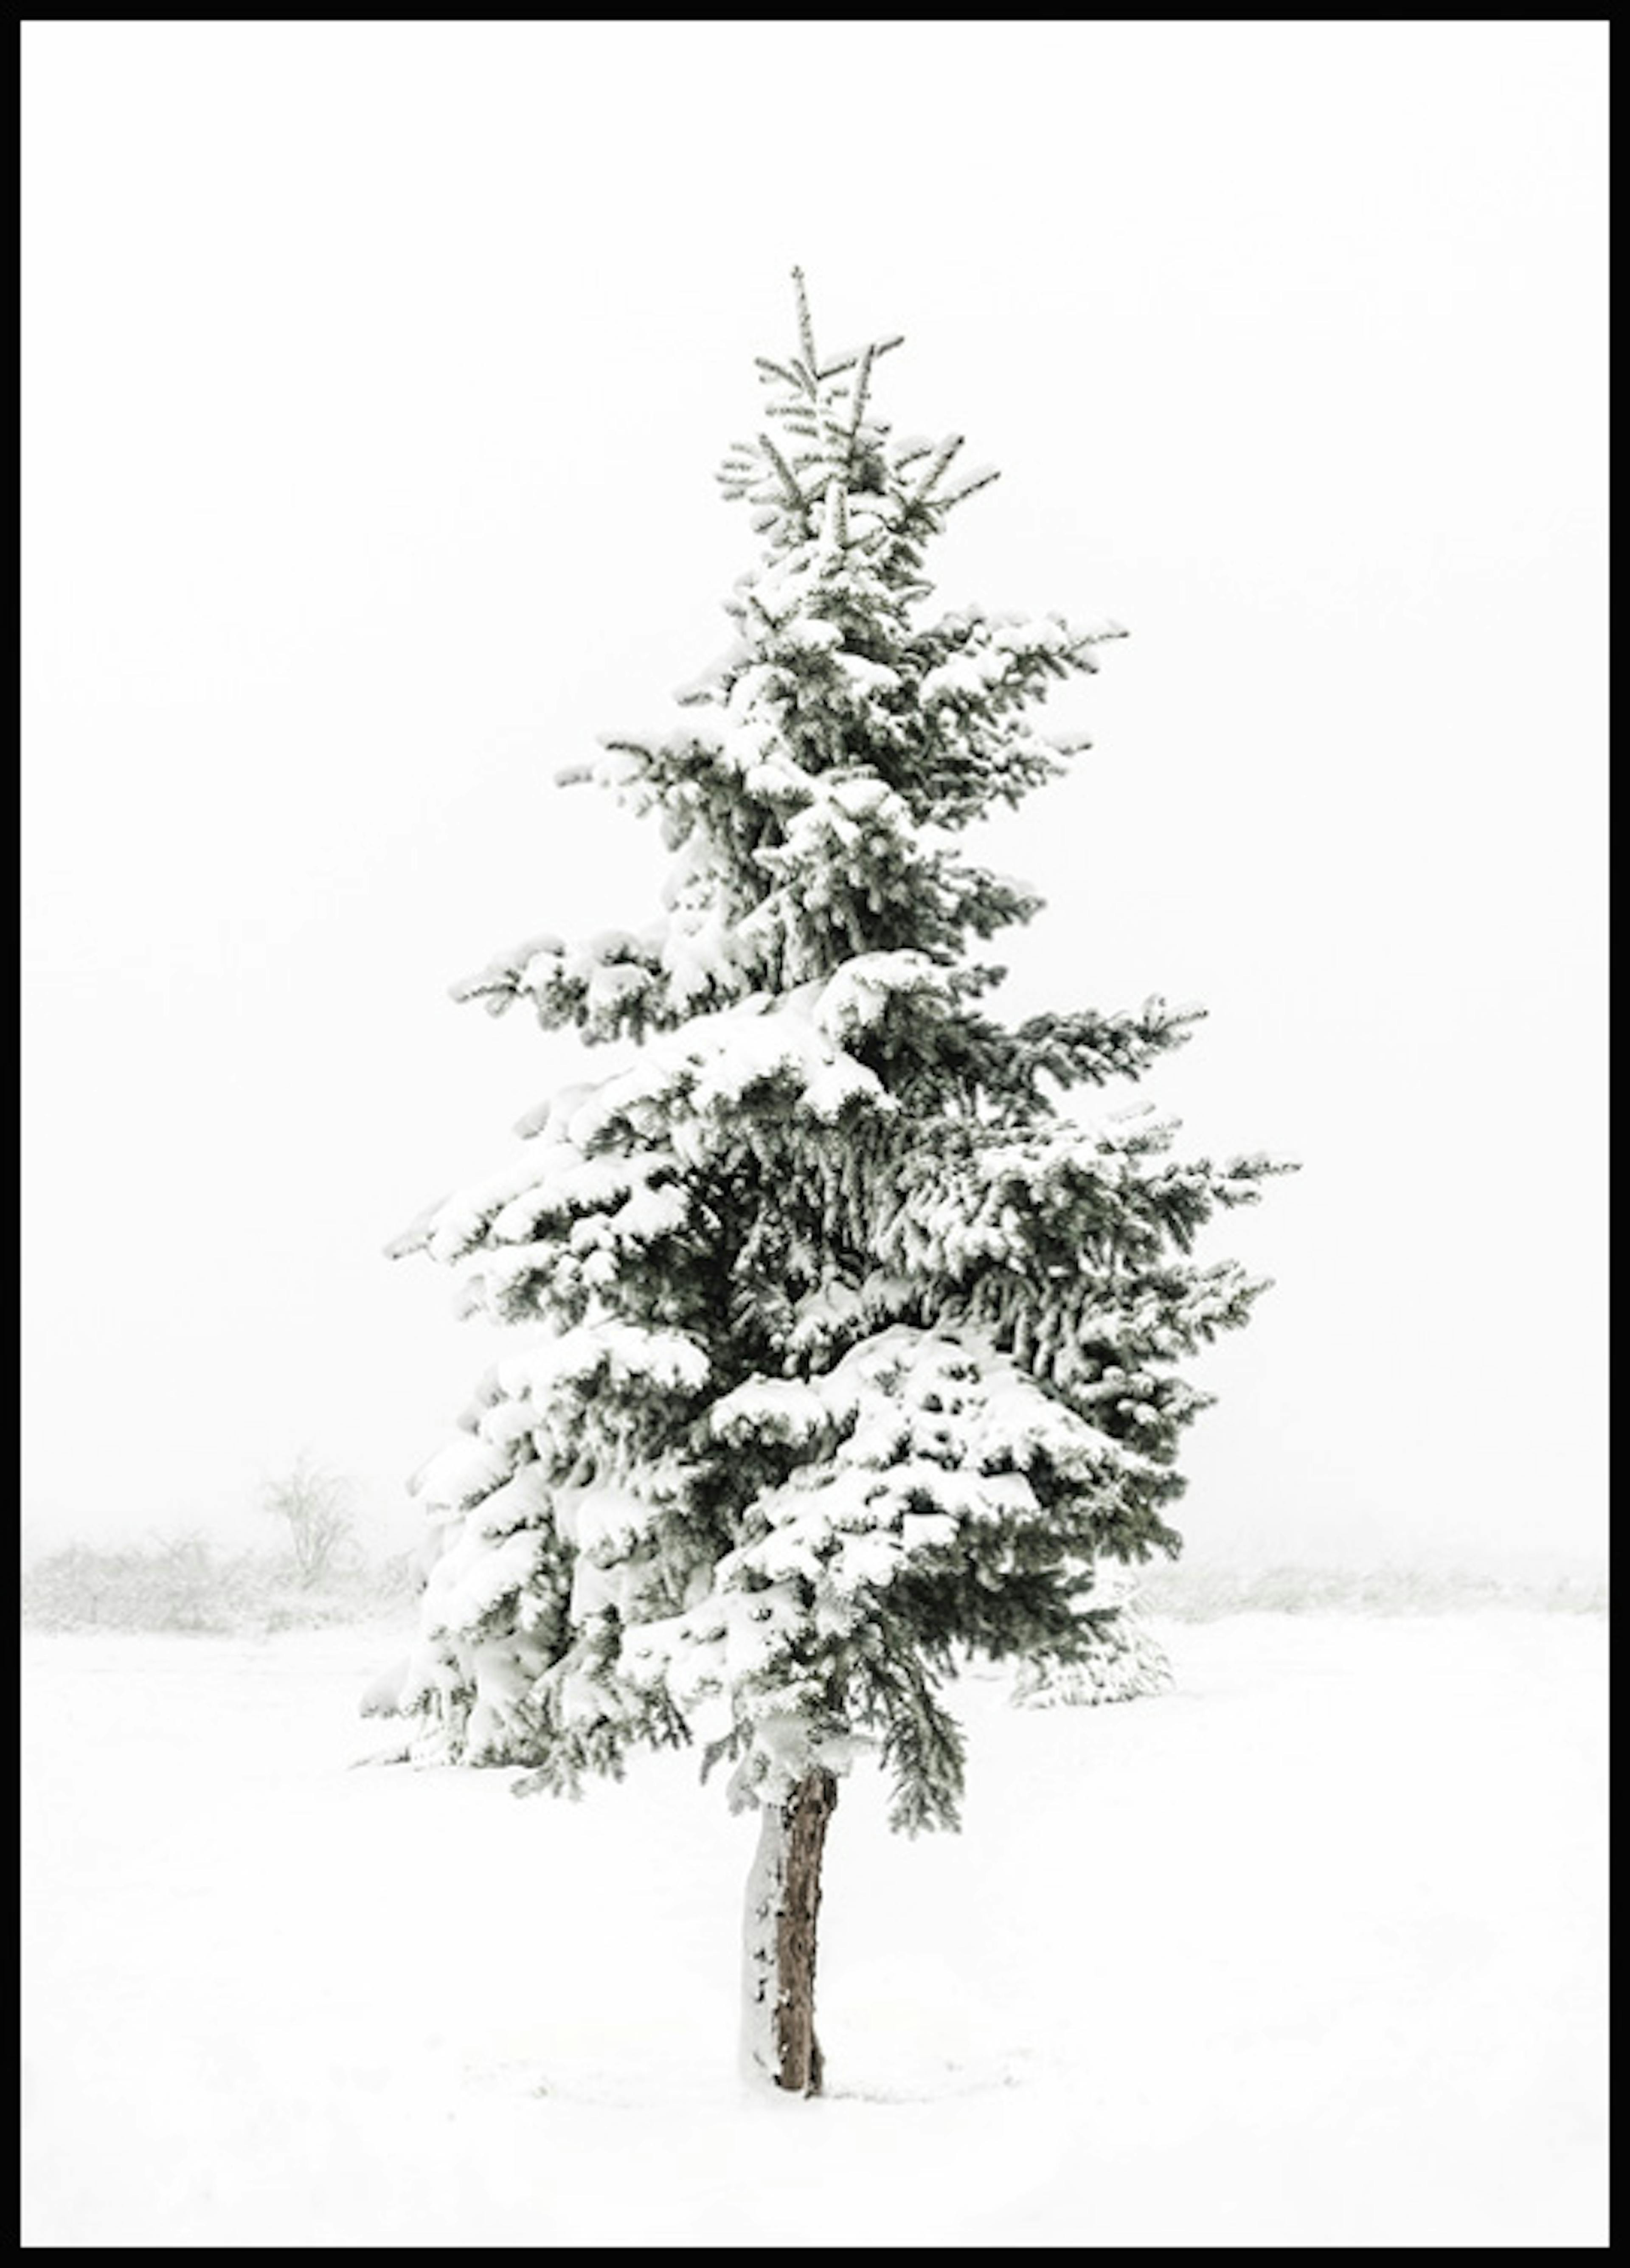 لوحة صورة شجرة مكثوة بالثلوج 0